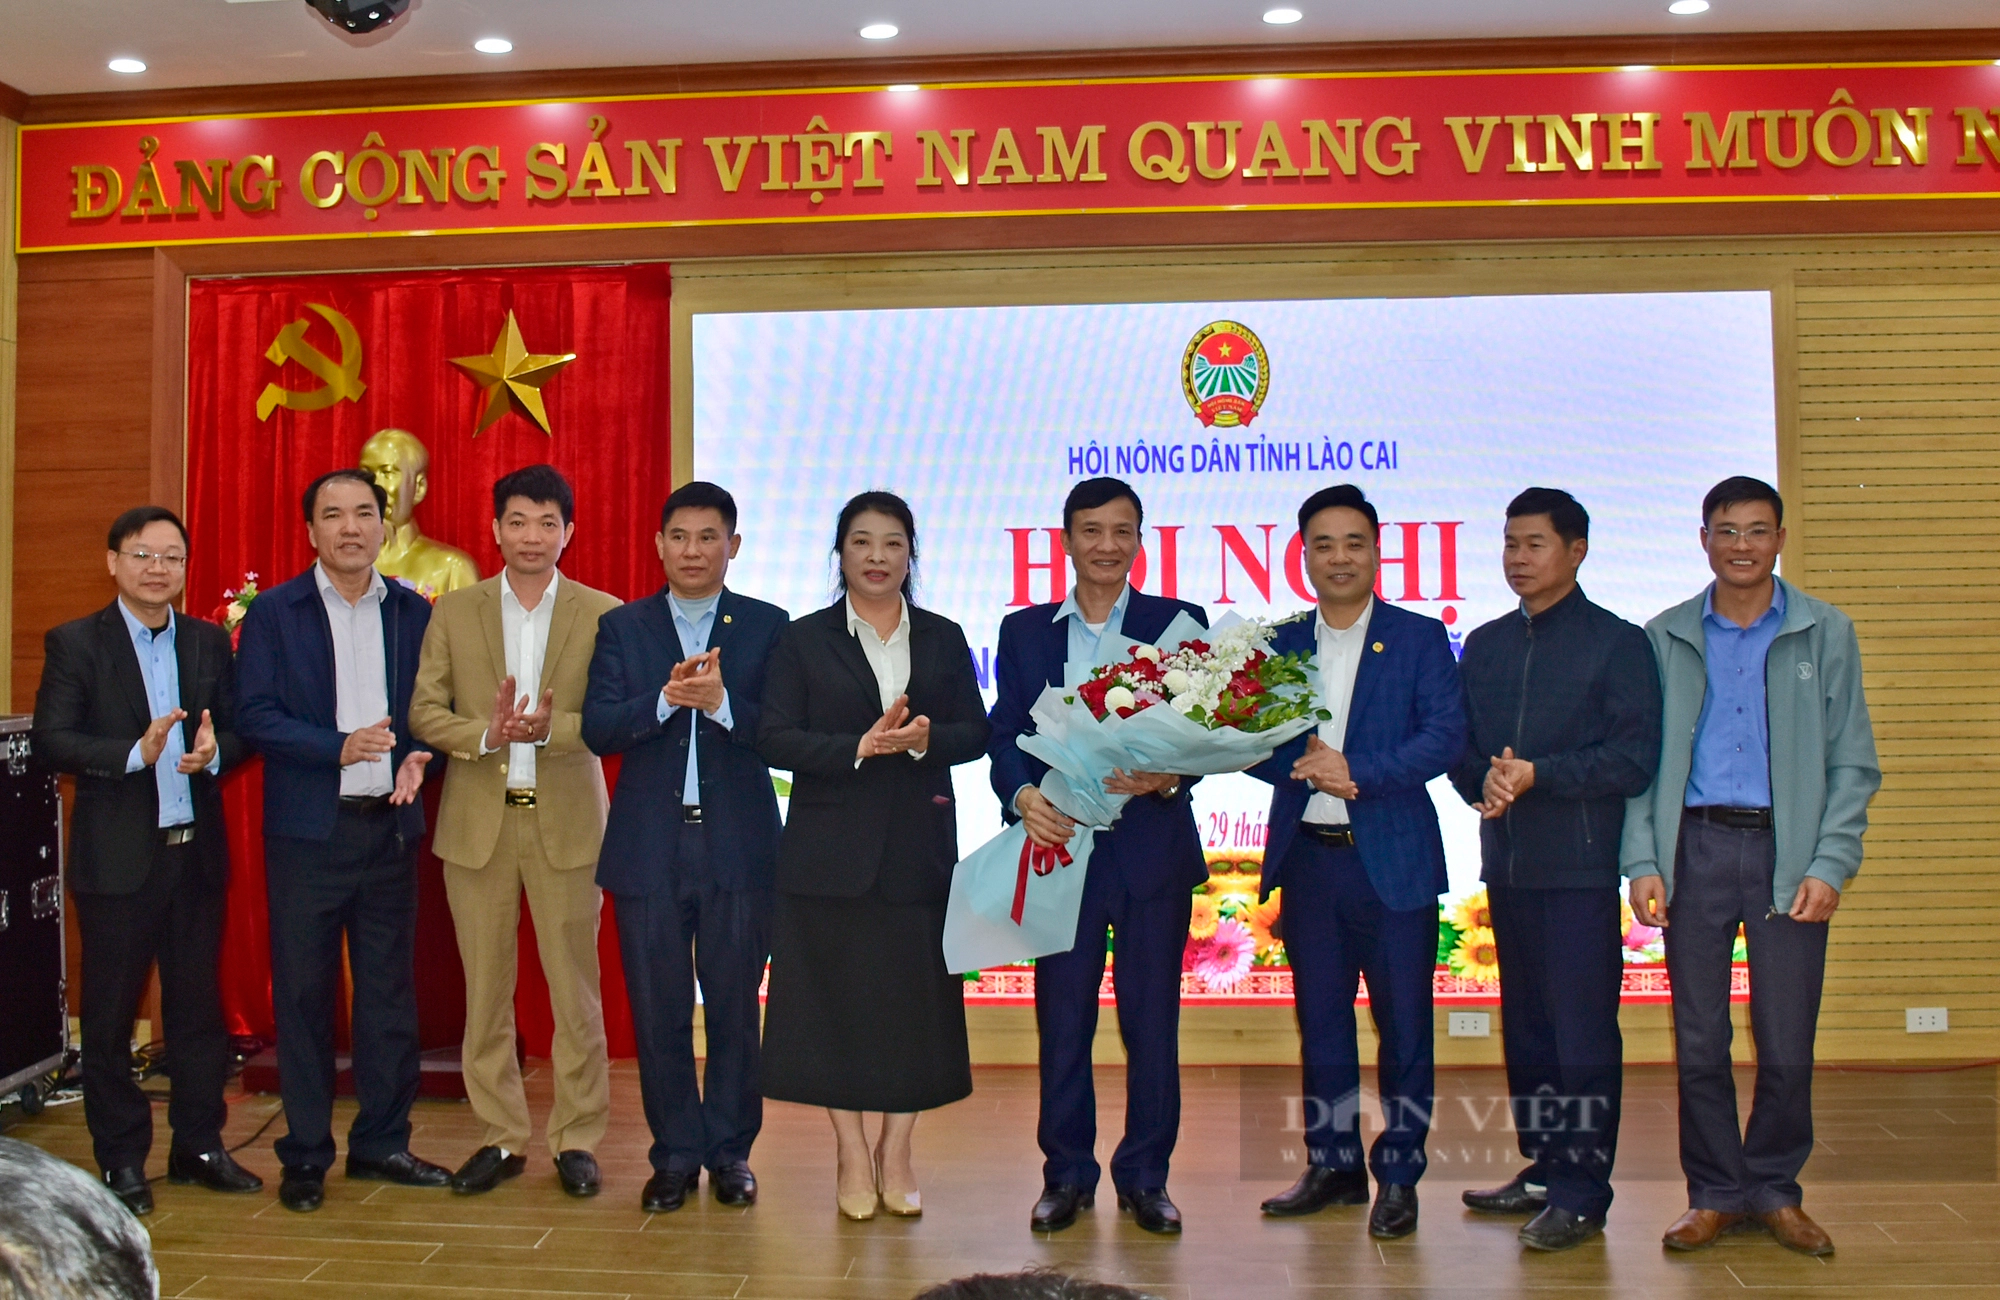 Ông Nguyễn Văn Chiến được bầu giữ chức Phó Chủ tịch Hội Nông dân tỉnh Lào Cai - Ảnh 5.